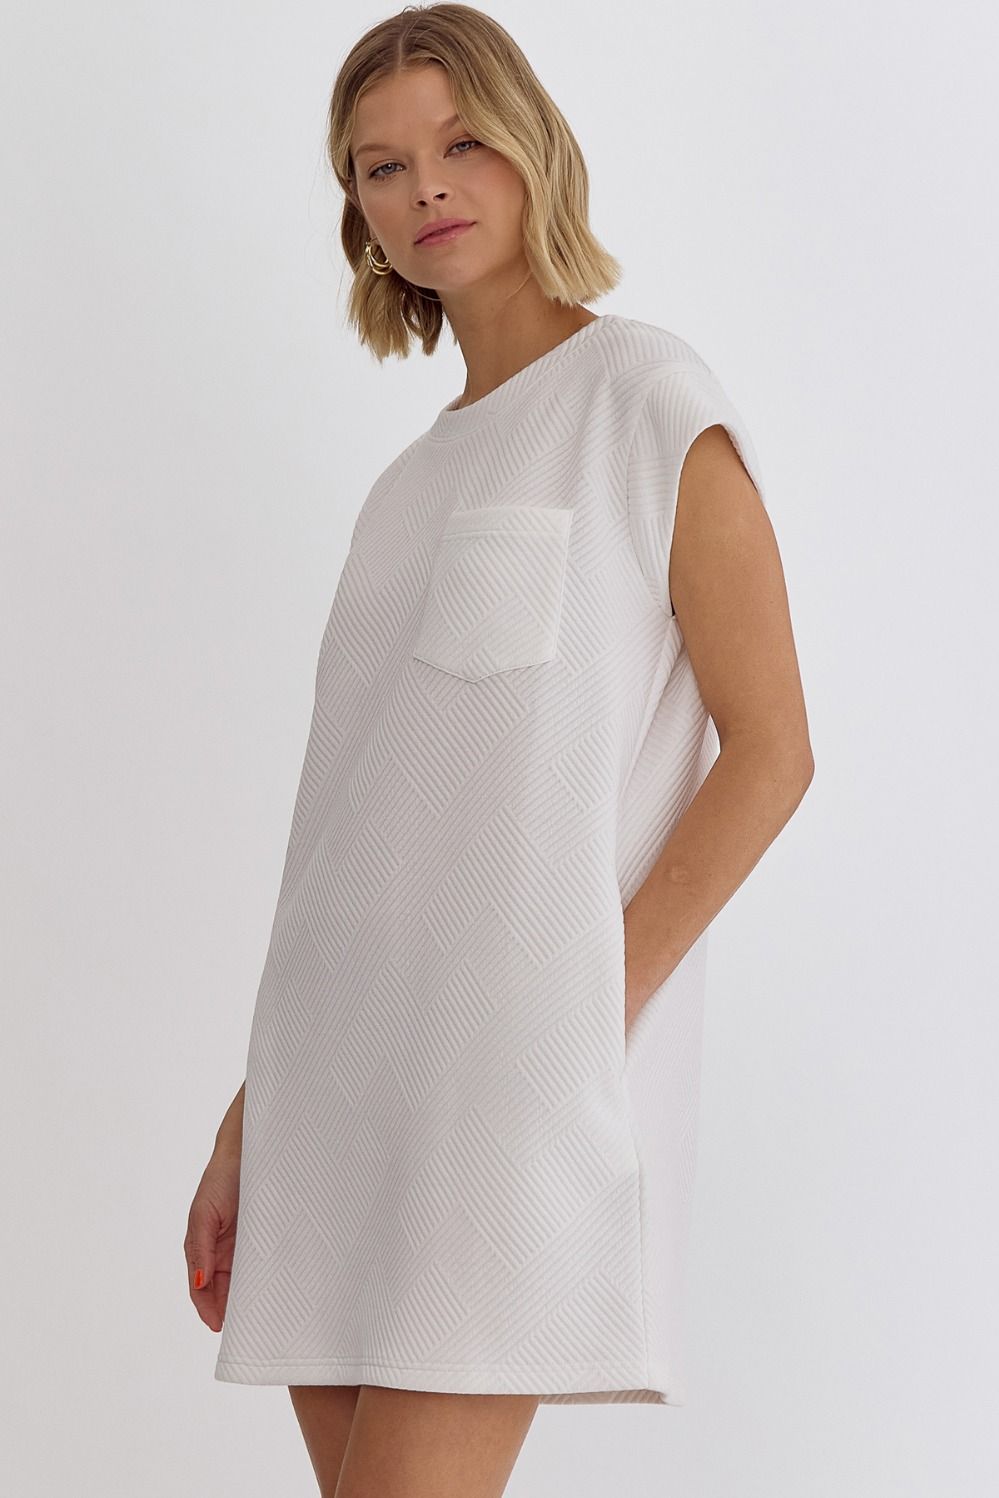 White Textured Mini Dress